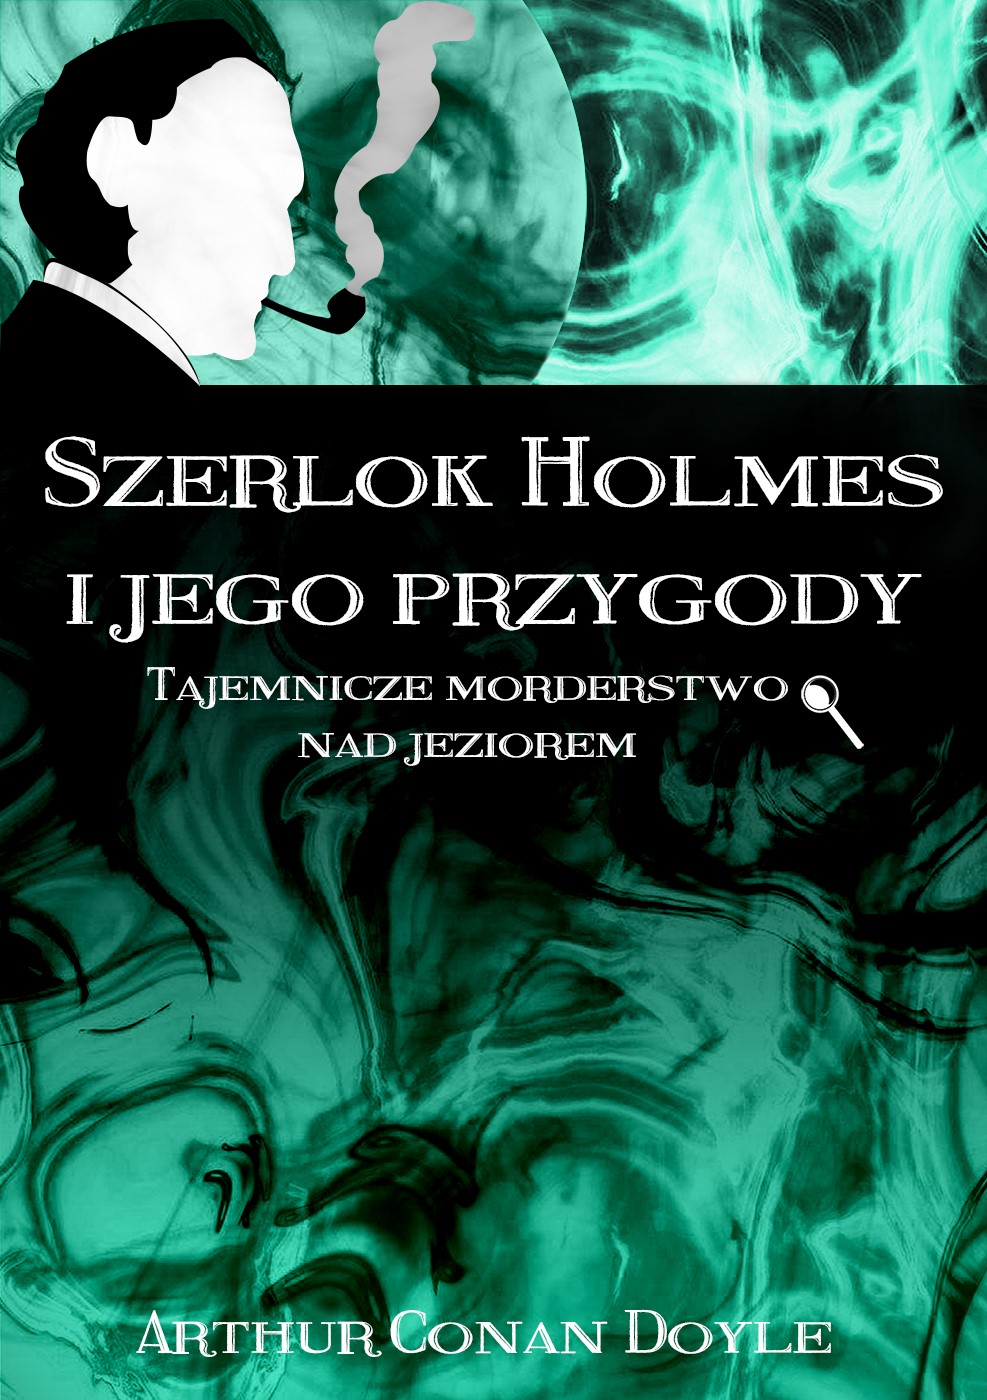 Okładka:Szerlok Holmes i jego przygody. Tajemnicze morderstwo nad jeziorem 